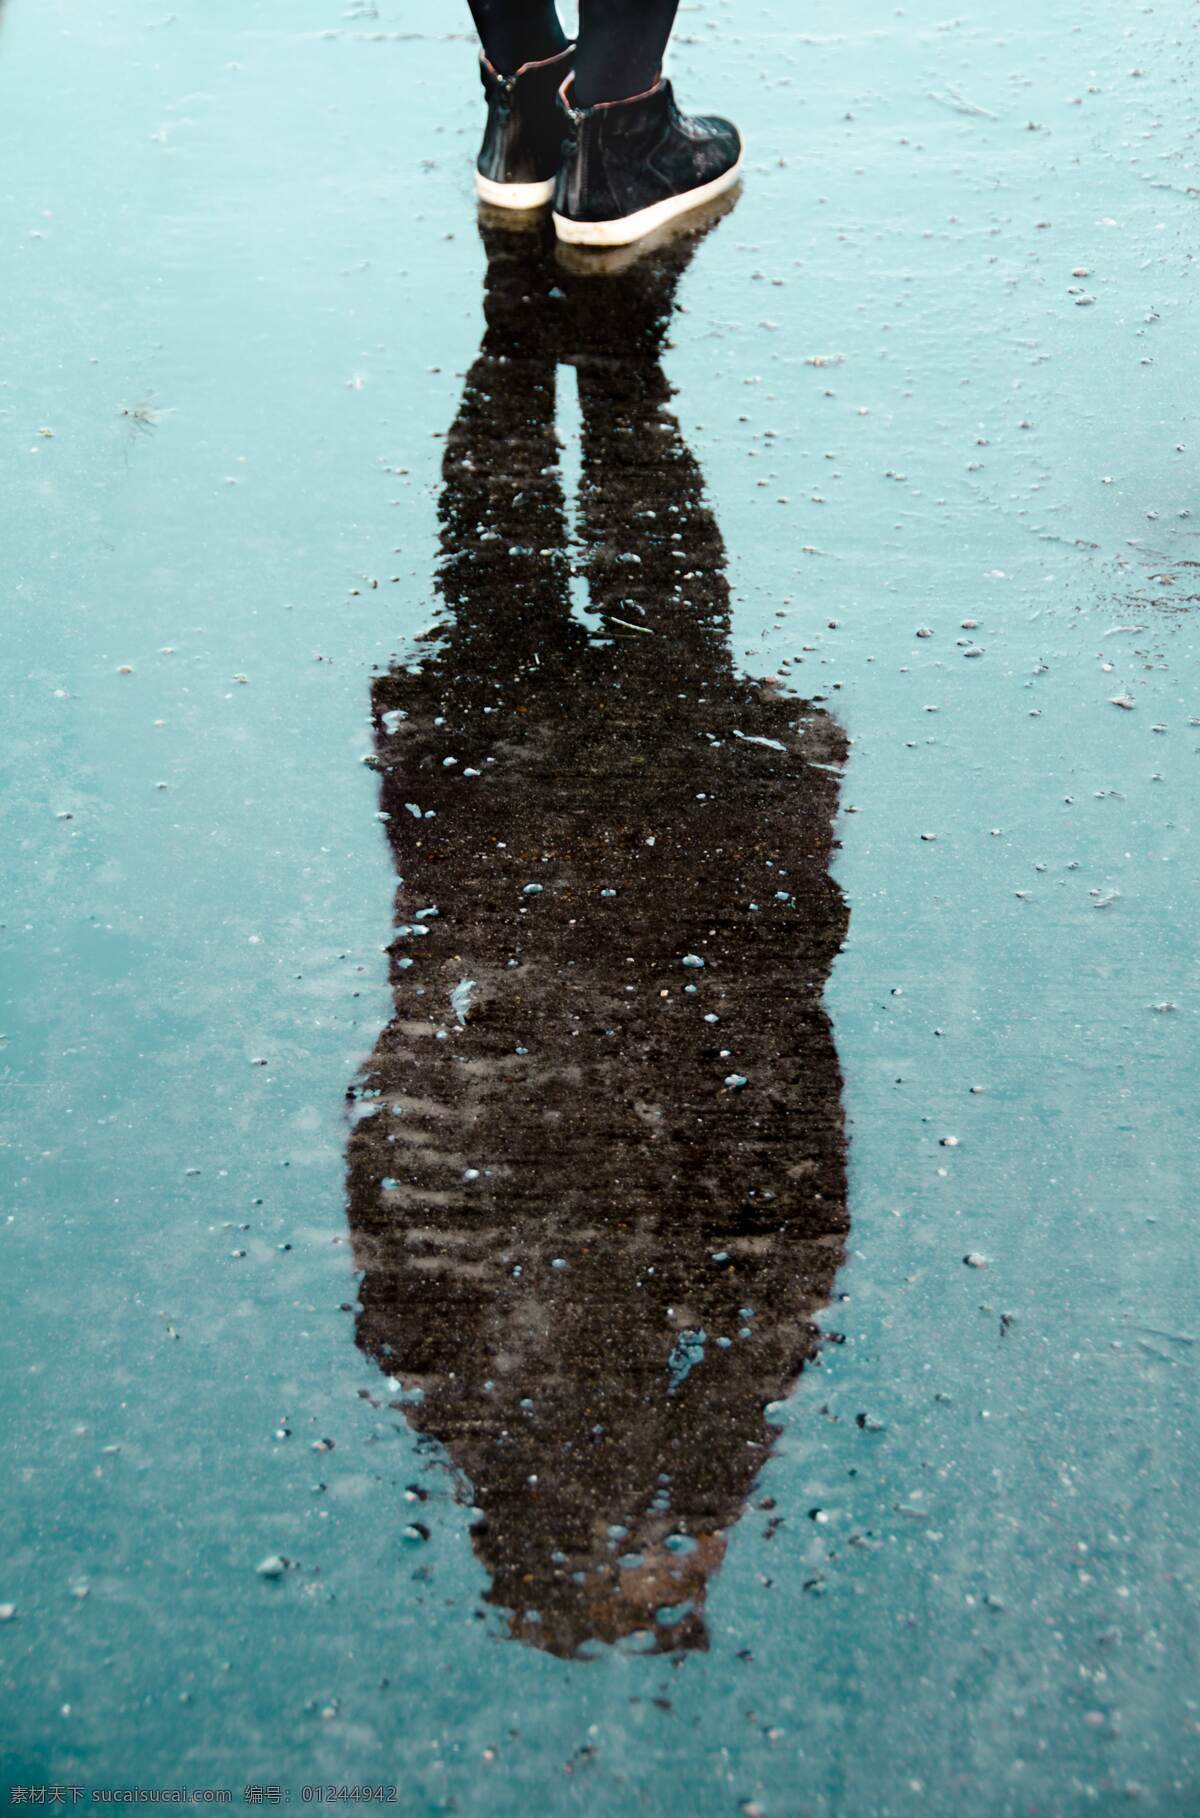 雨天的倒影 雨天 倒影 湿润 潮湿 冷色 人物图库 人物摄影